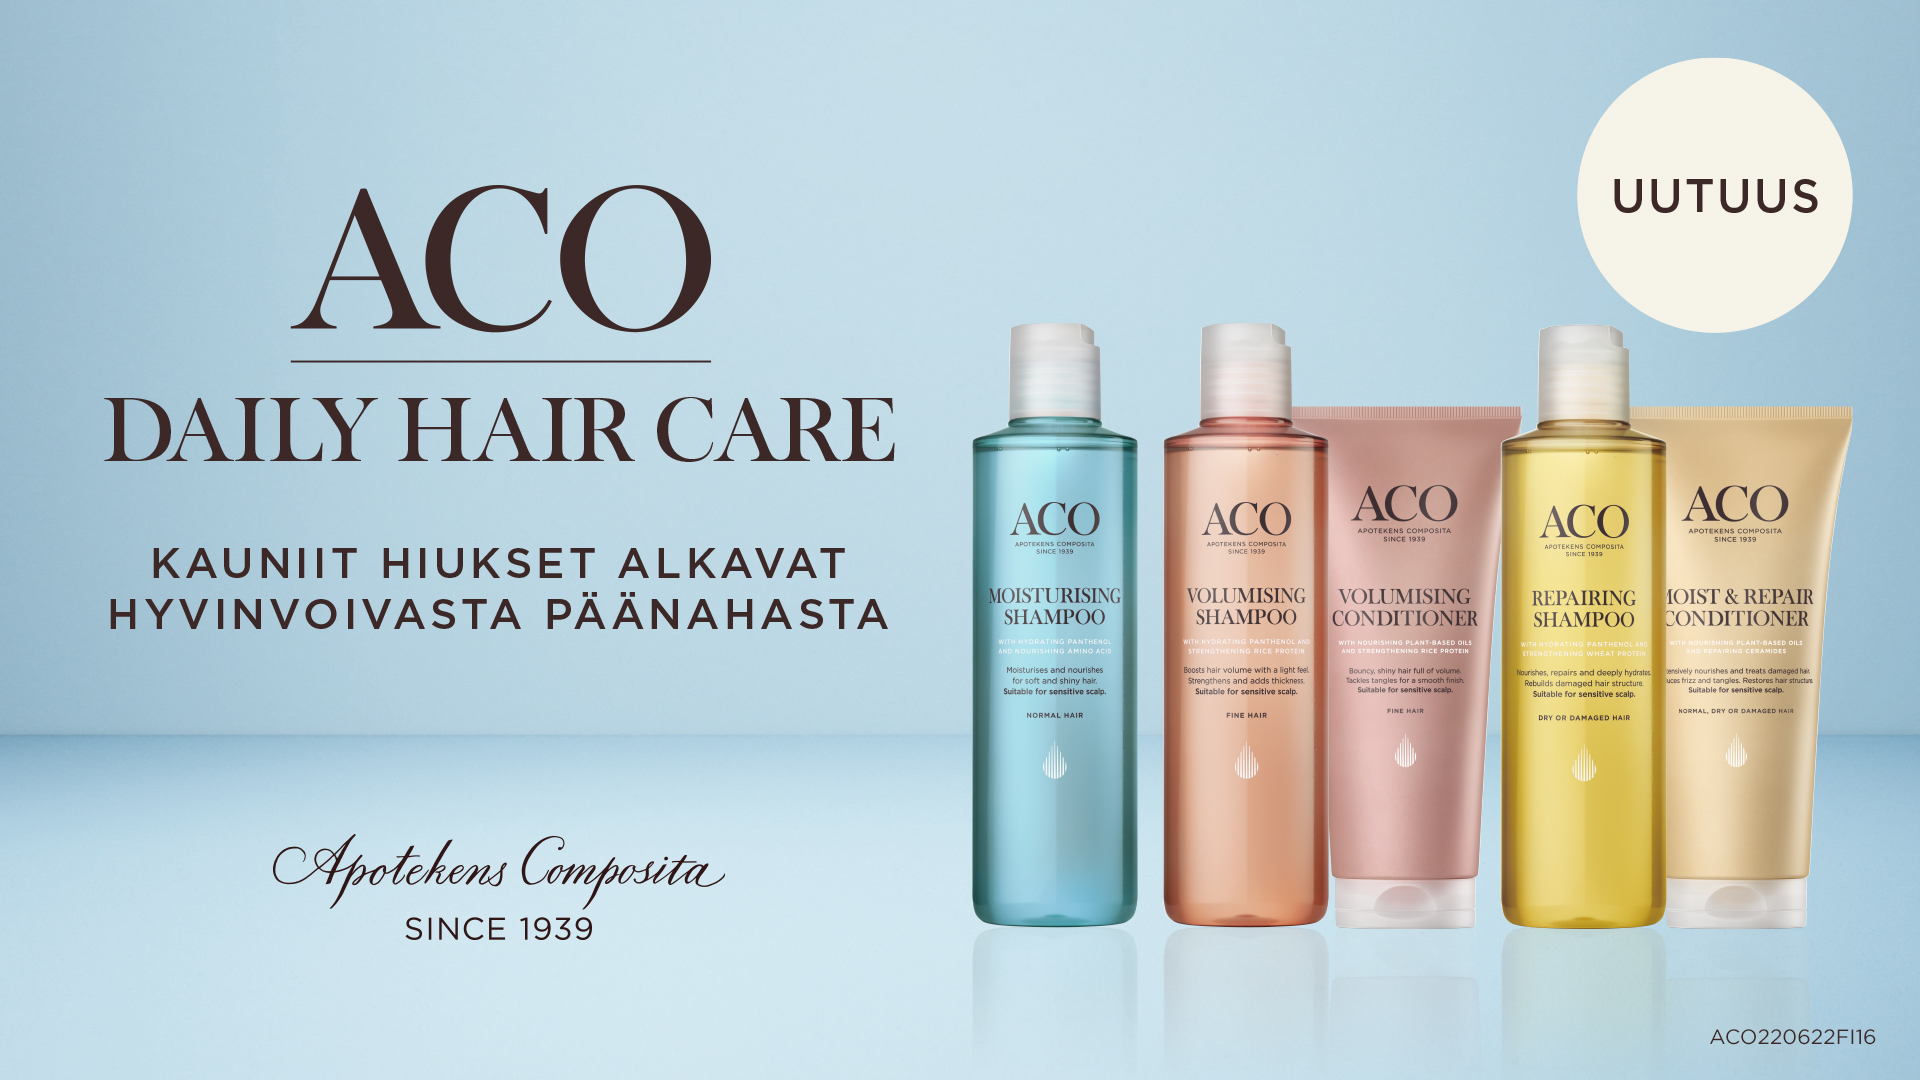 Uutuus Aco Hair shampoo ja hoitoaine